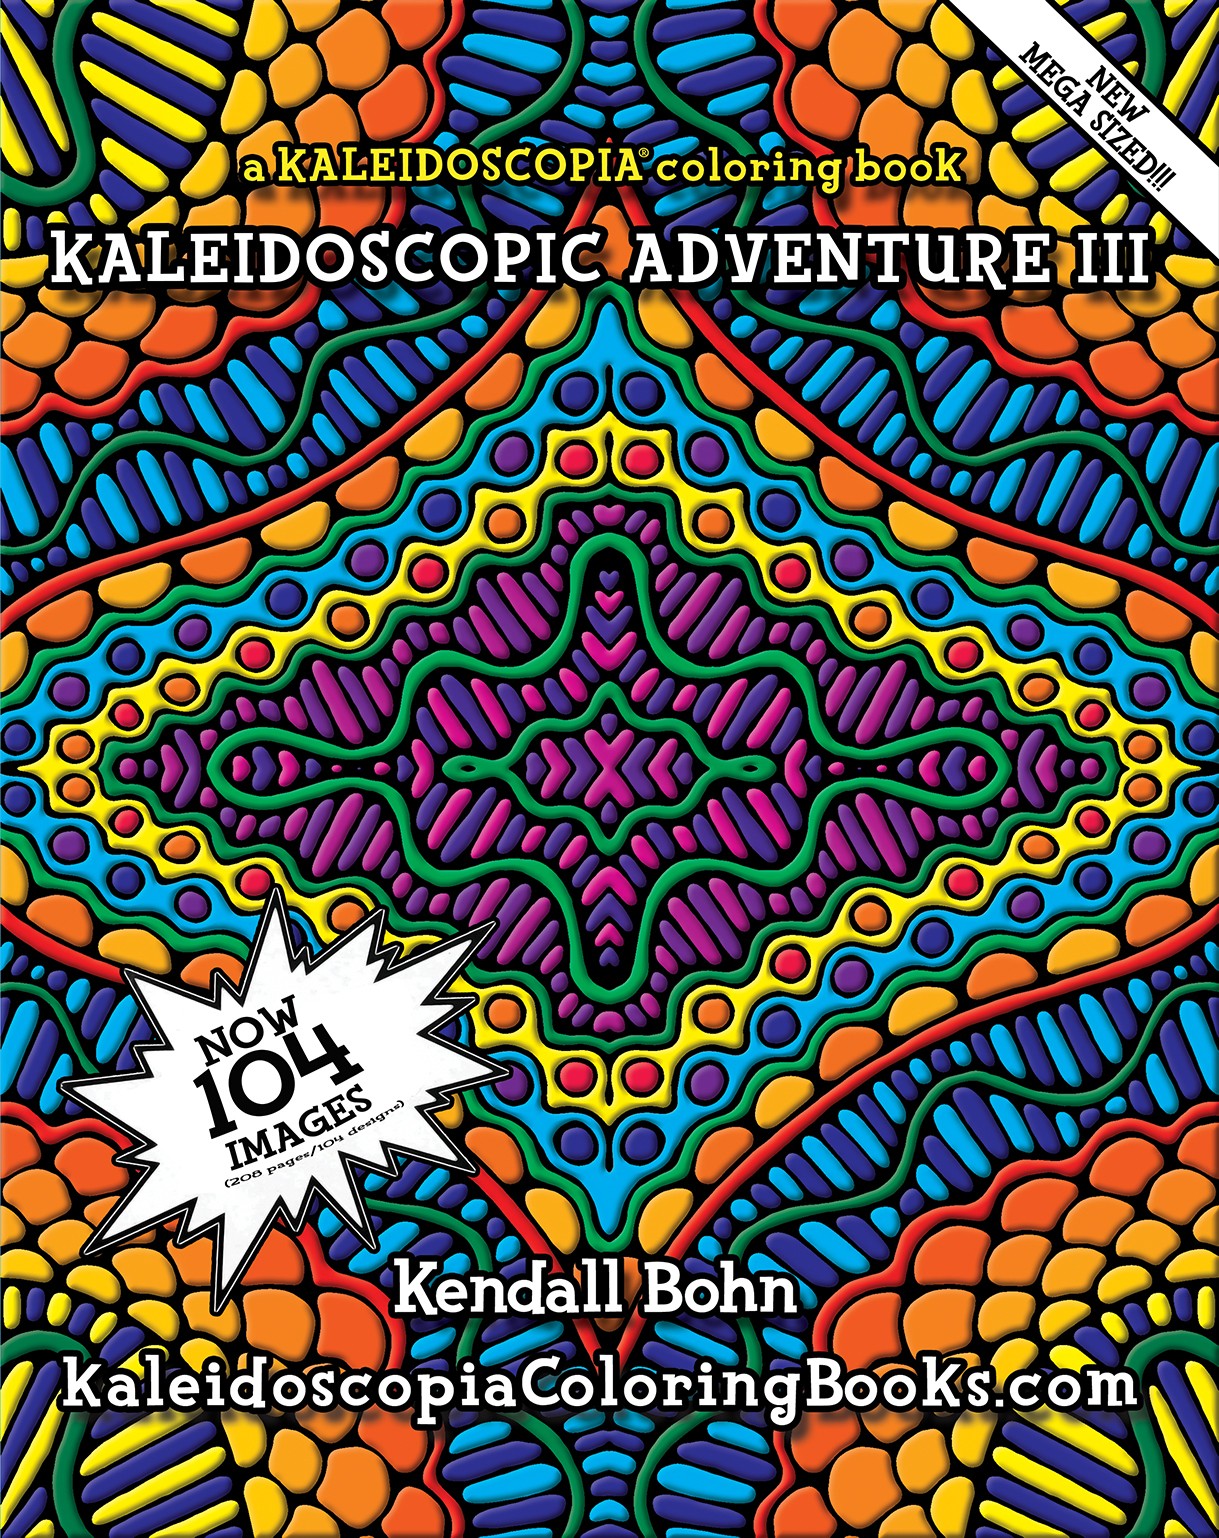 Kaleidoscopic Adventure III